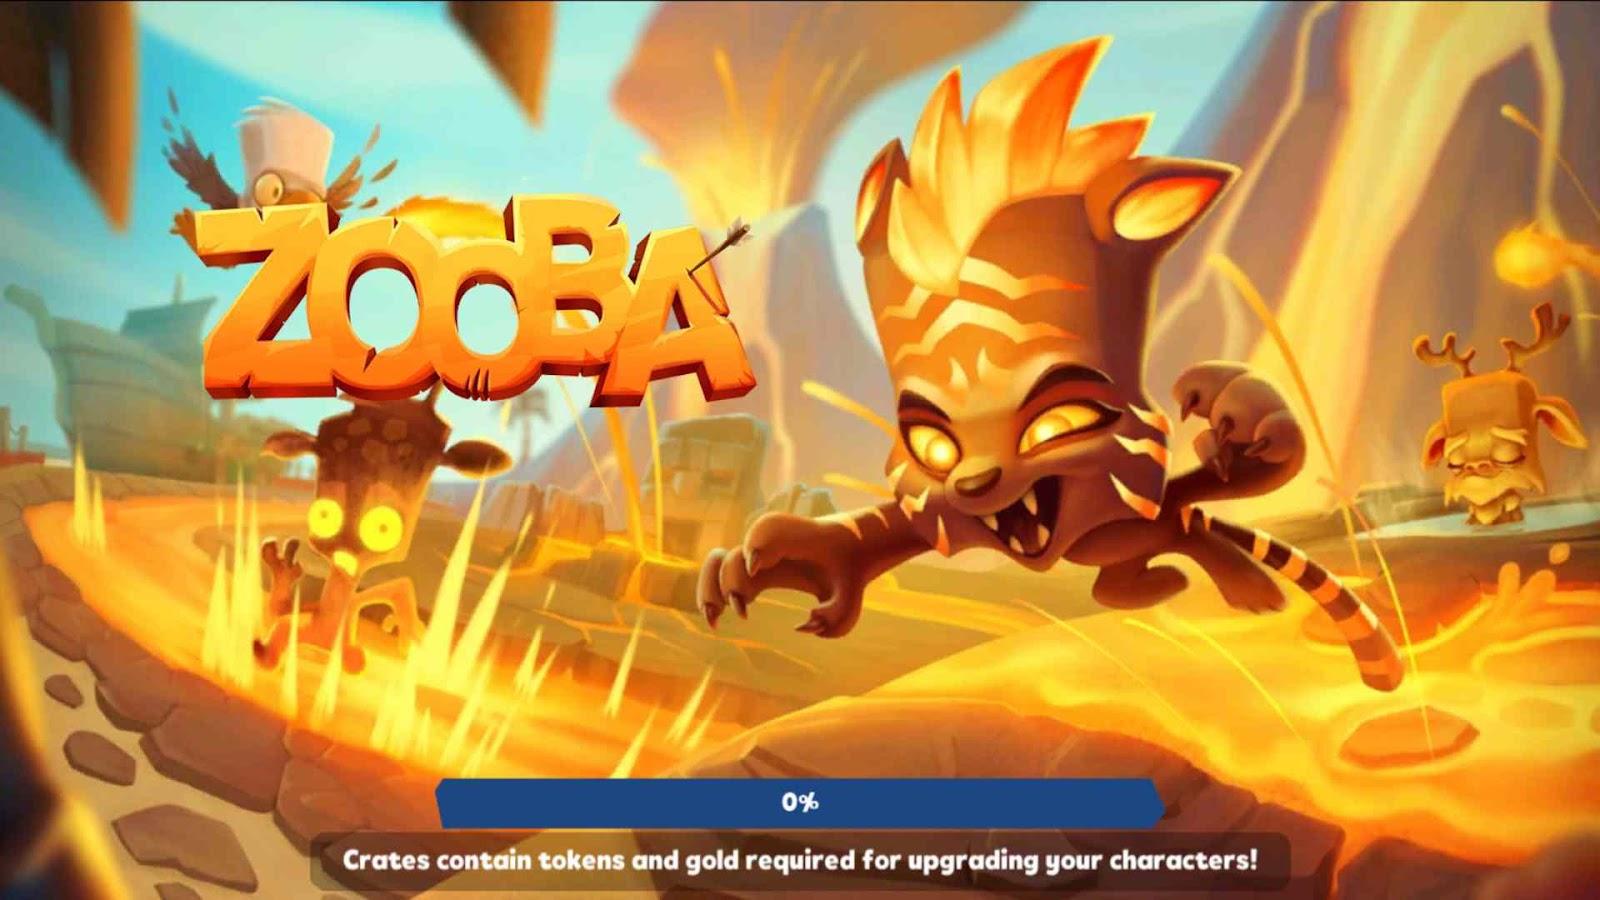 Zooba: Fun Battle Royale Games